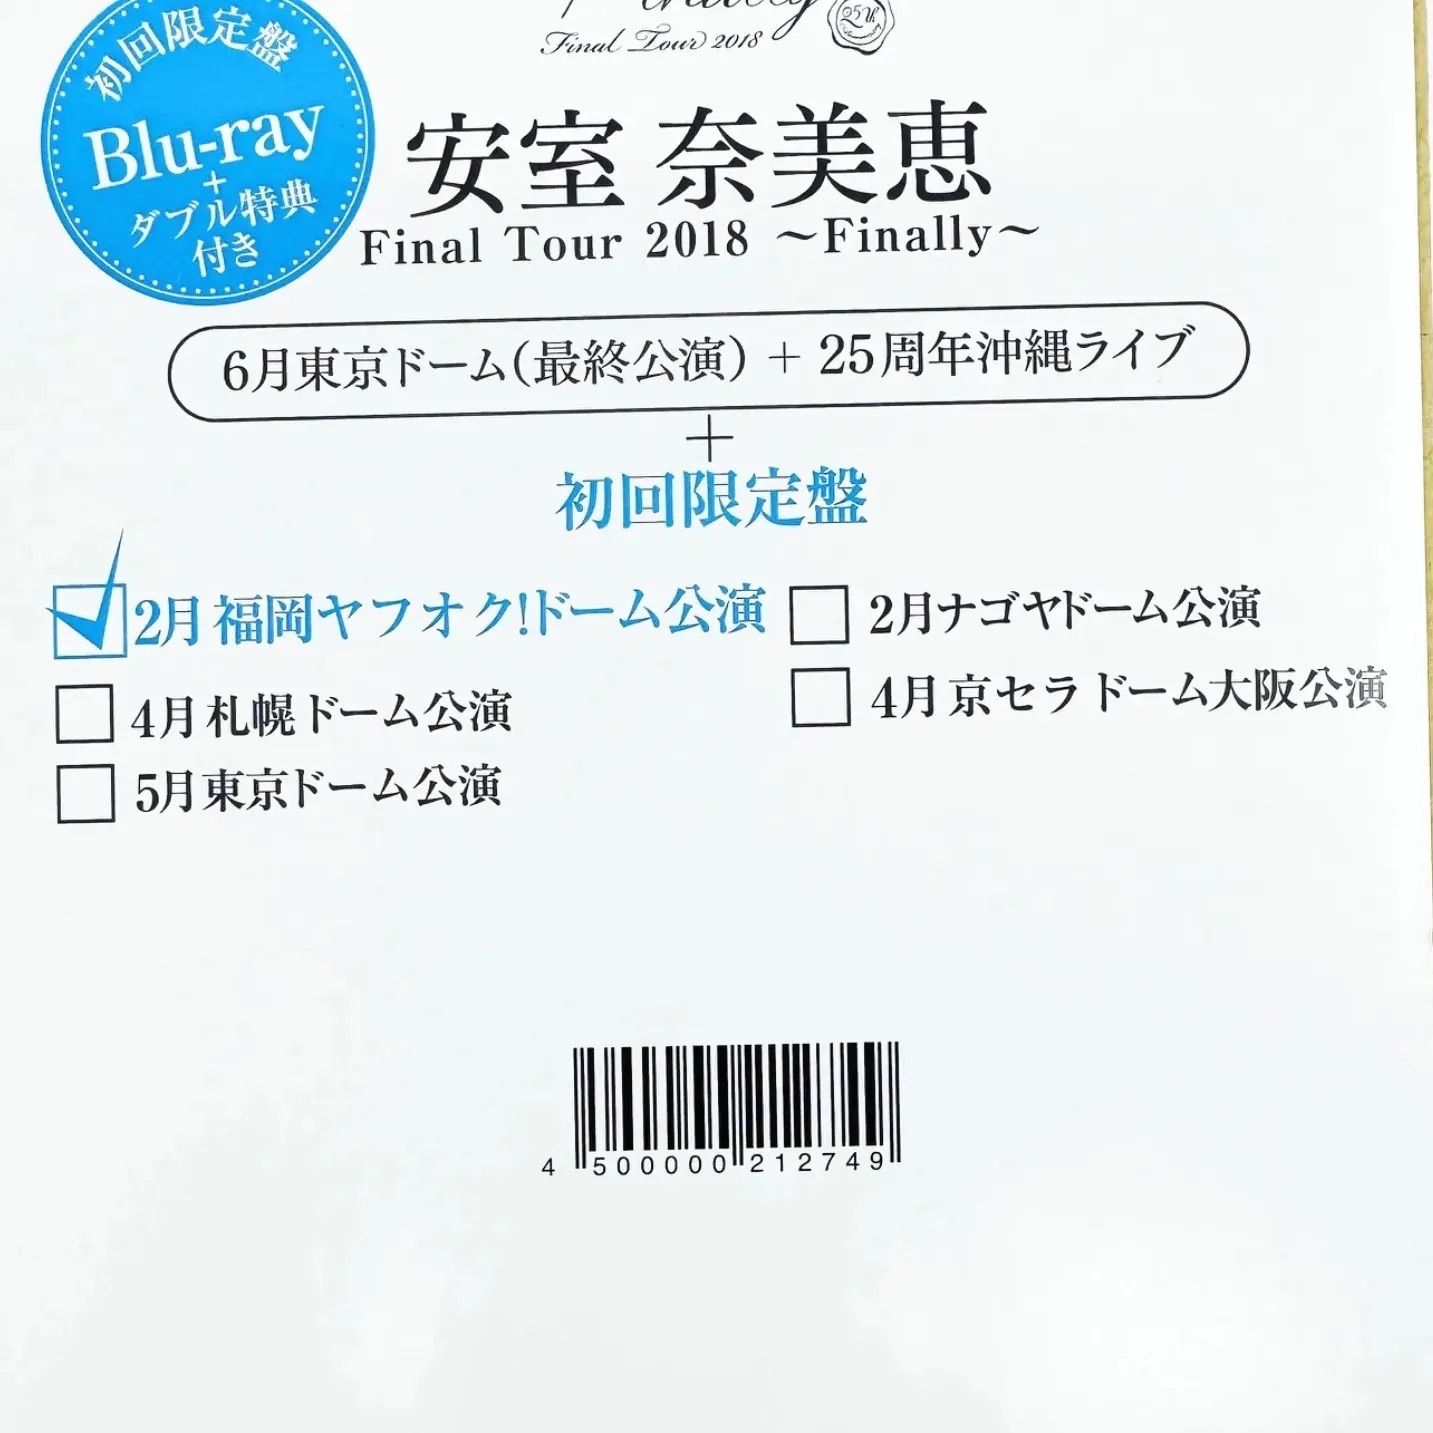 新品・完全未開封Blu-ray3枚組 安室奈美恵 namie amuro 初回限定盤 